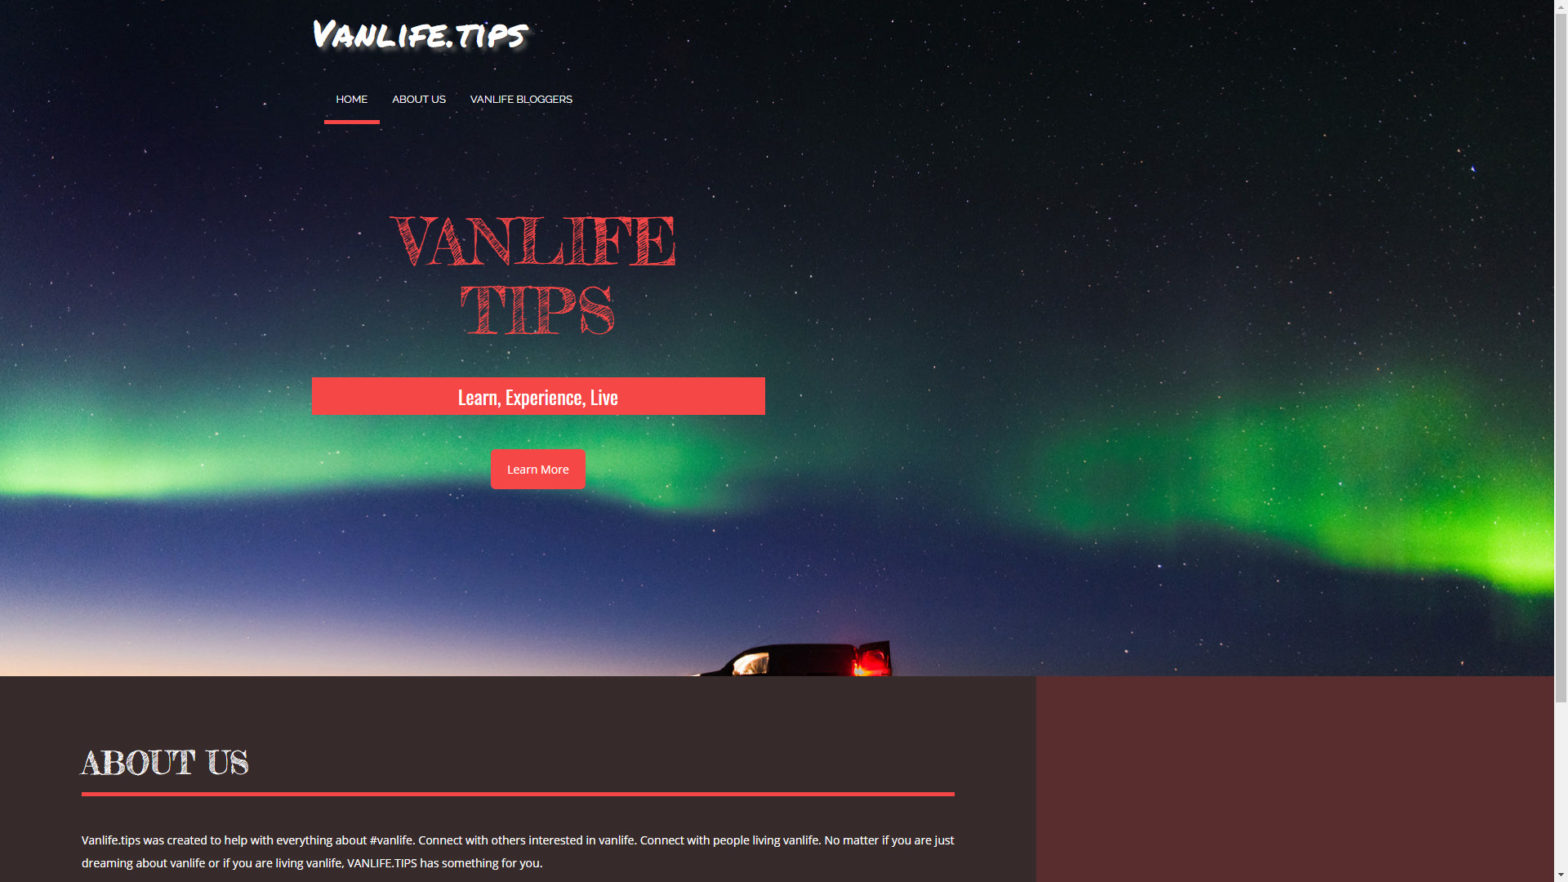 Vanlife.tips